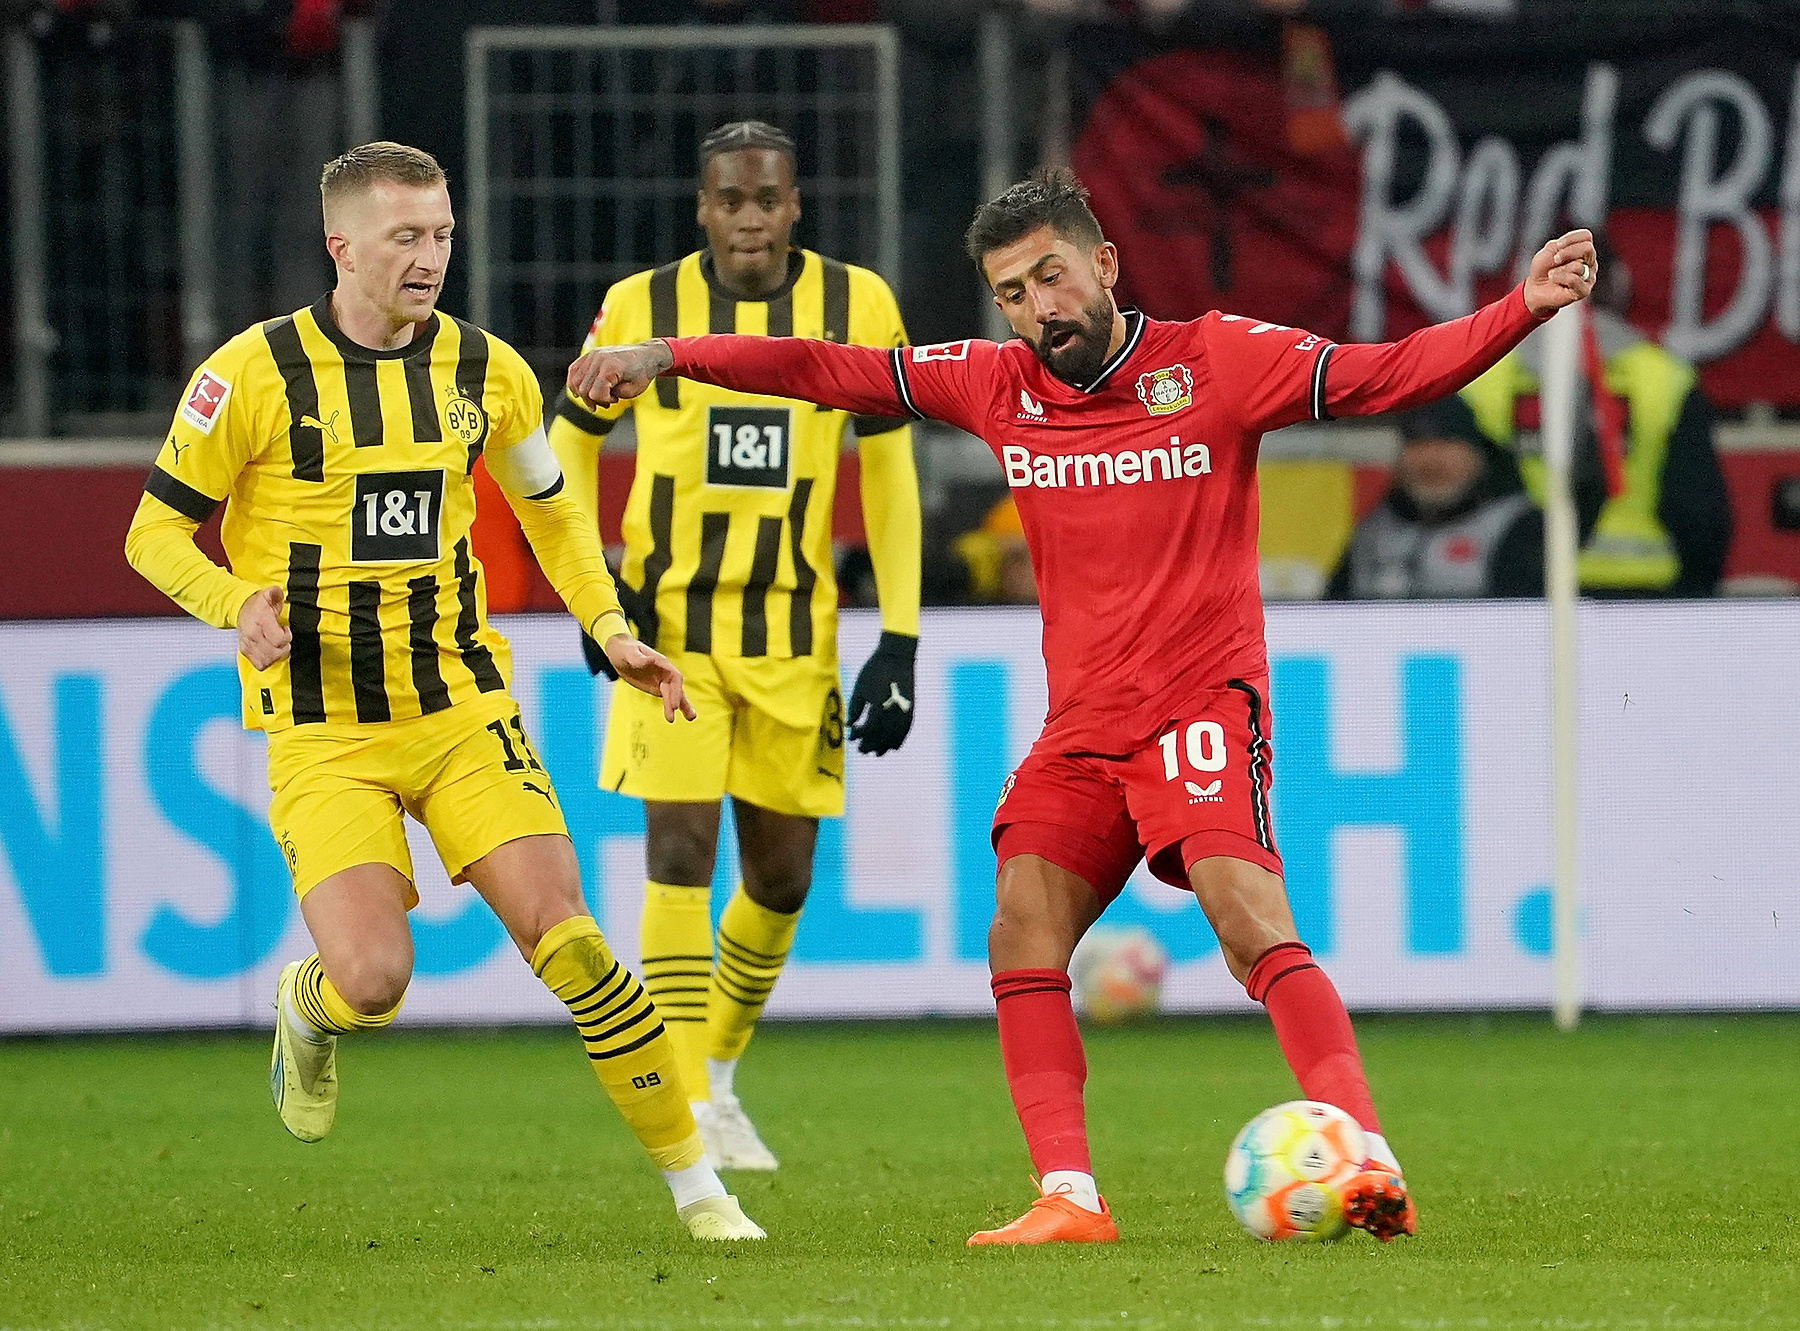 Bundesliga: Borussia Dortmund – SC Freiburg typy i kursy bukmacherskie